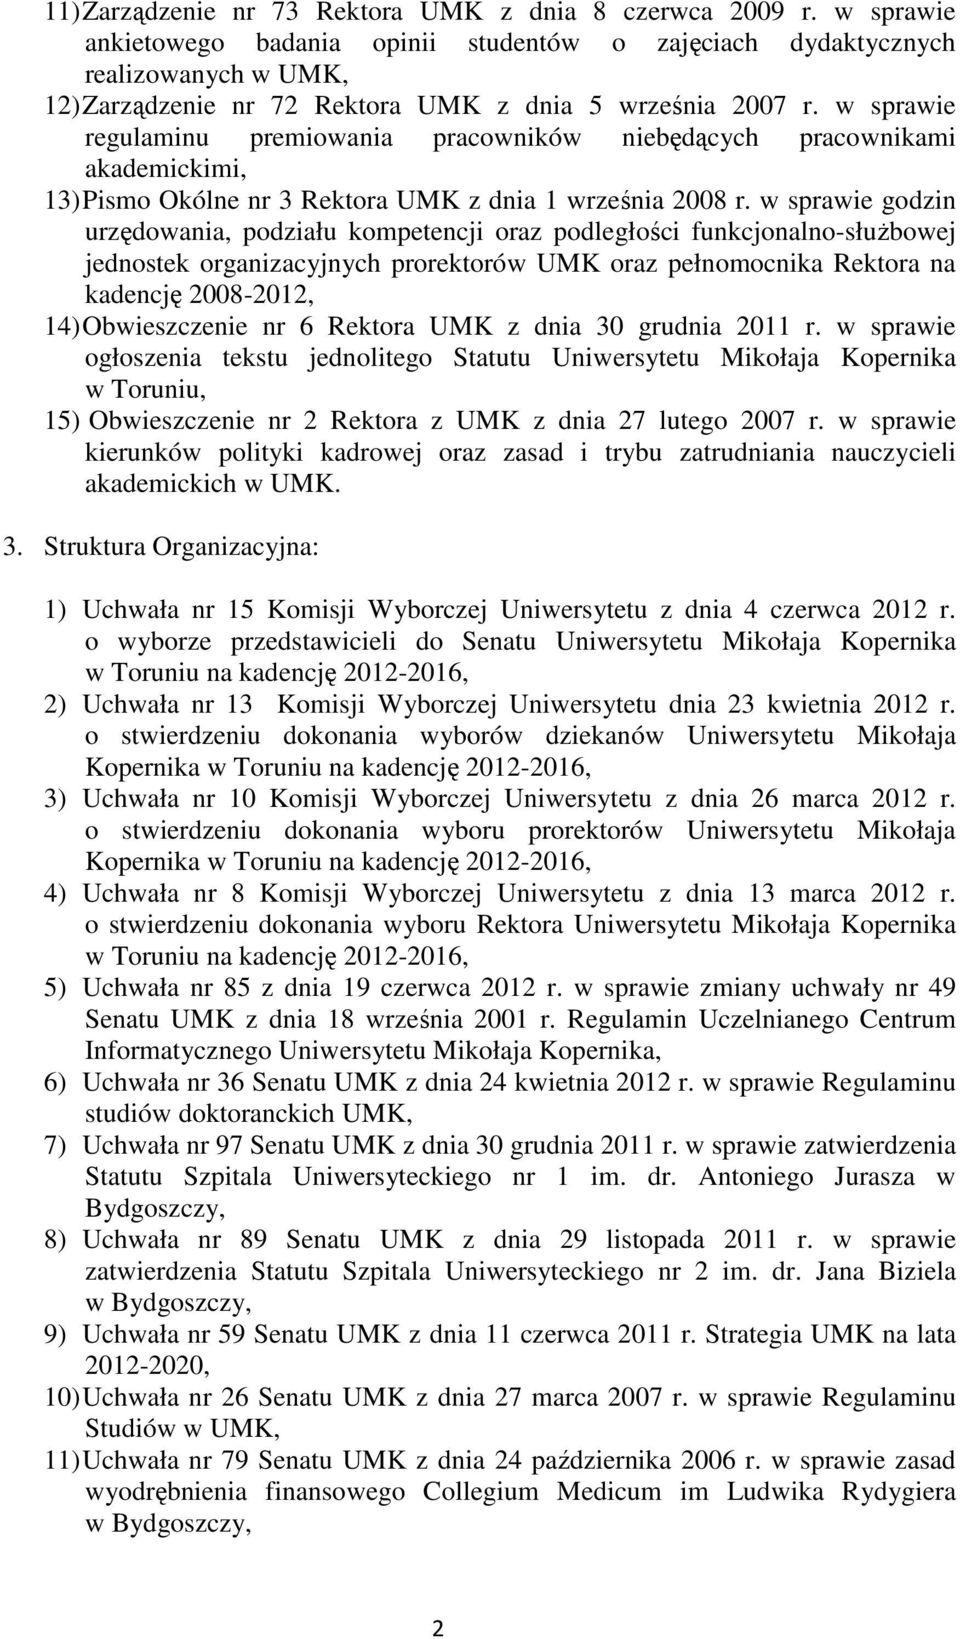 w sprawie regulaminu premiowania pracowników niebędących pracownikami akademickimi, 13) Pismo Okólne nr 3 Rektora UMK z dnia 1 września 2008 r.